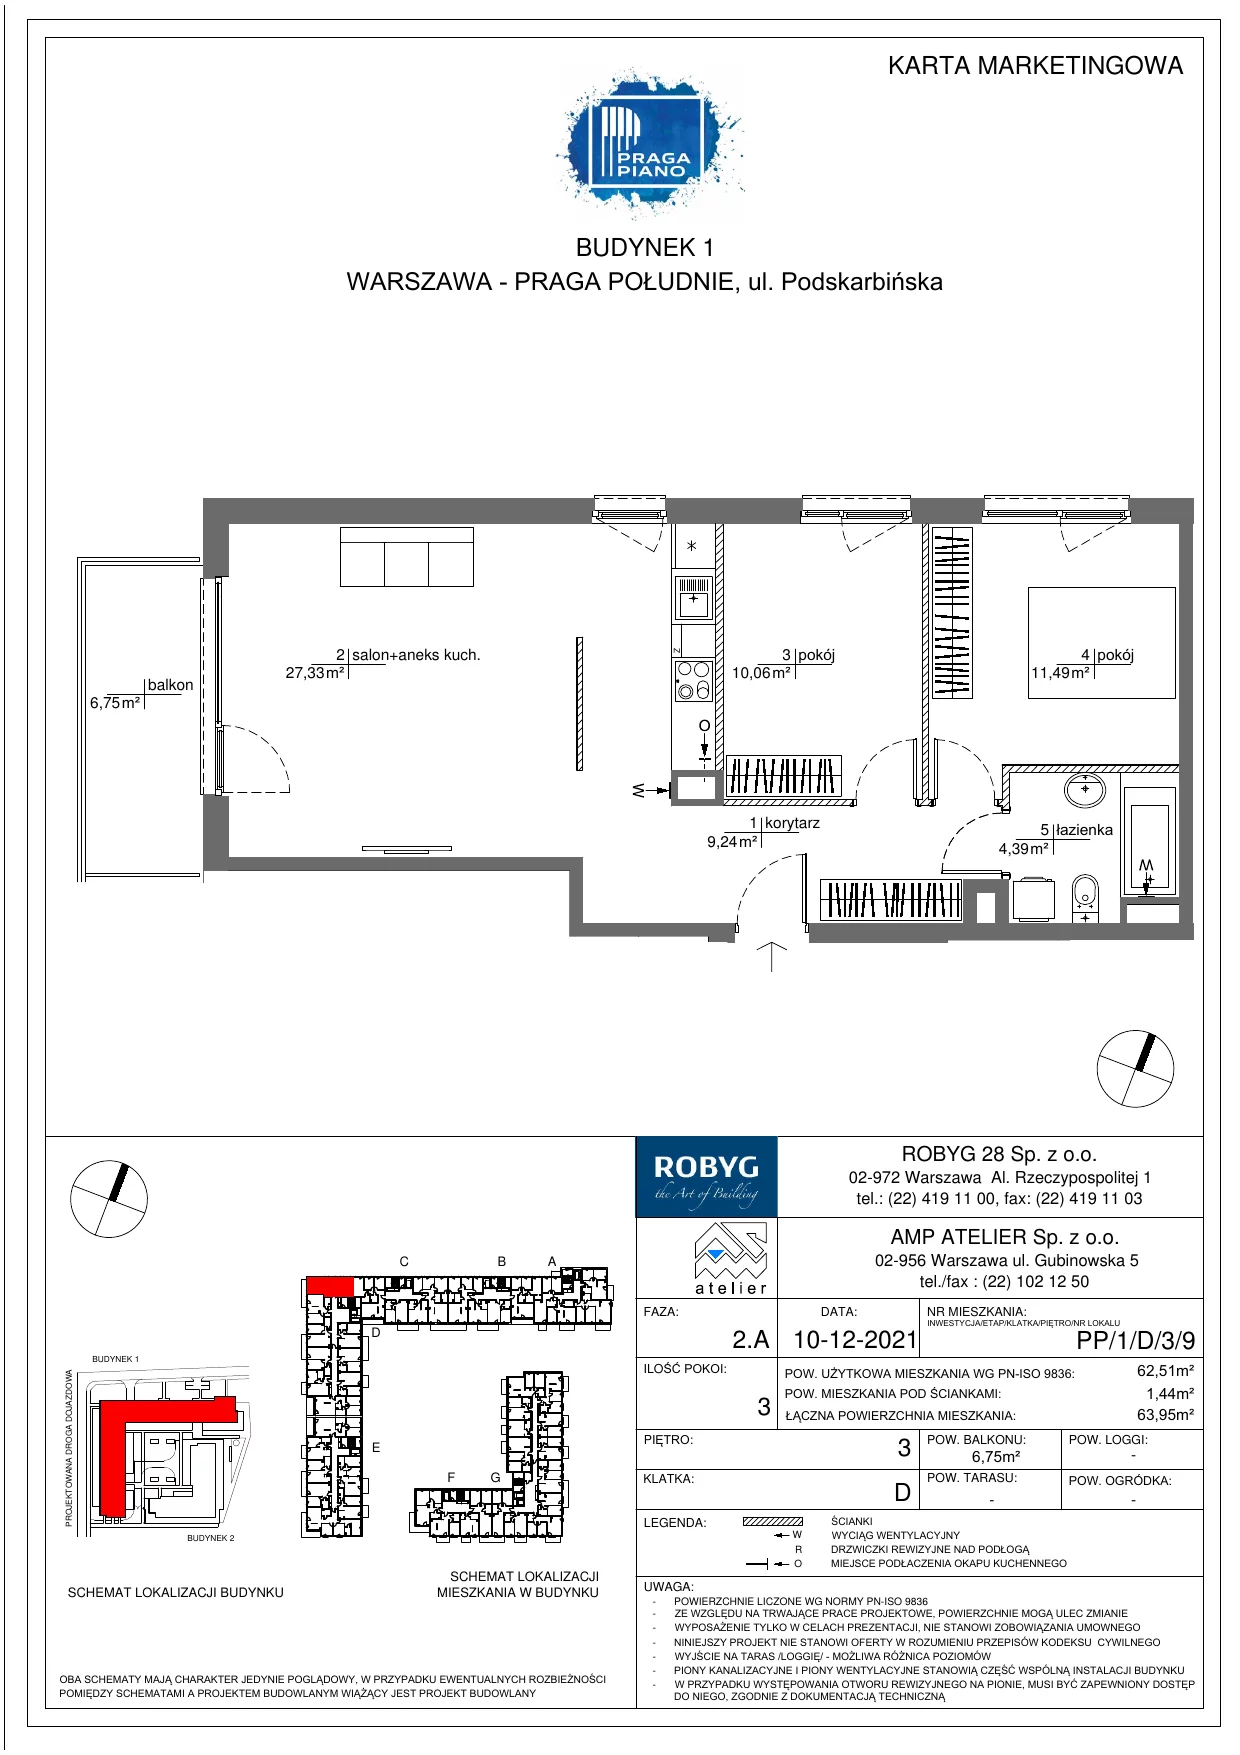 Mieszkanie 62,51 m², piętro 3, oferta nr PP/1/D/3/9, Praga Piano, Warszawa, Praga Południe, Kamionek, ul. Podskarbińska